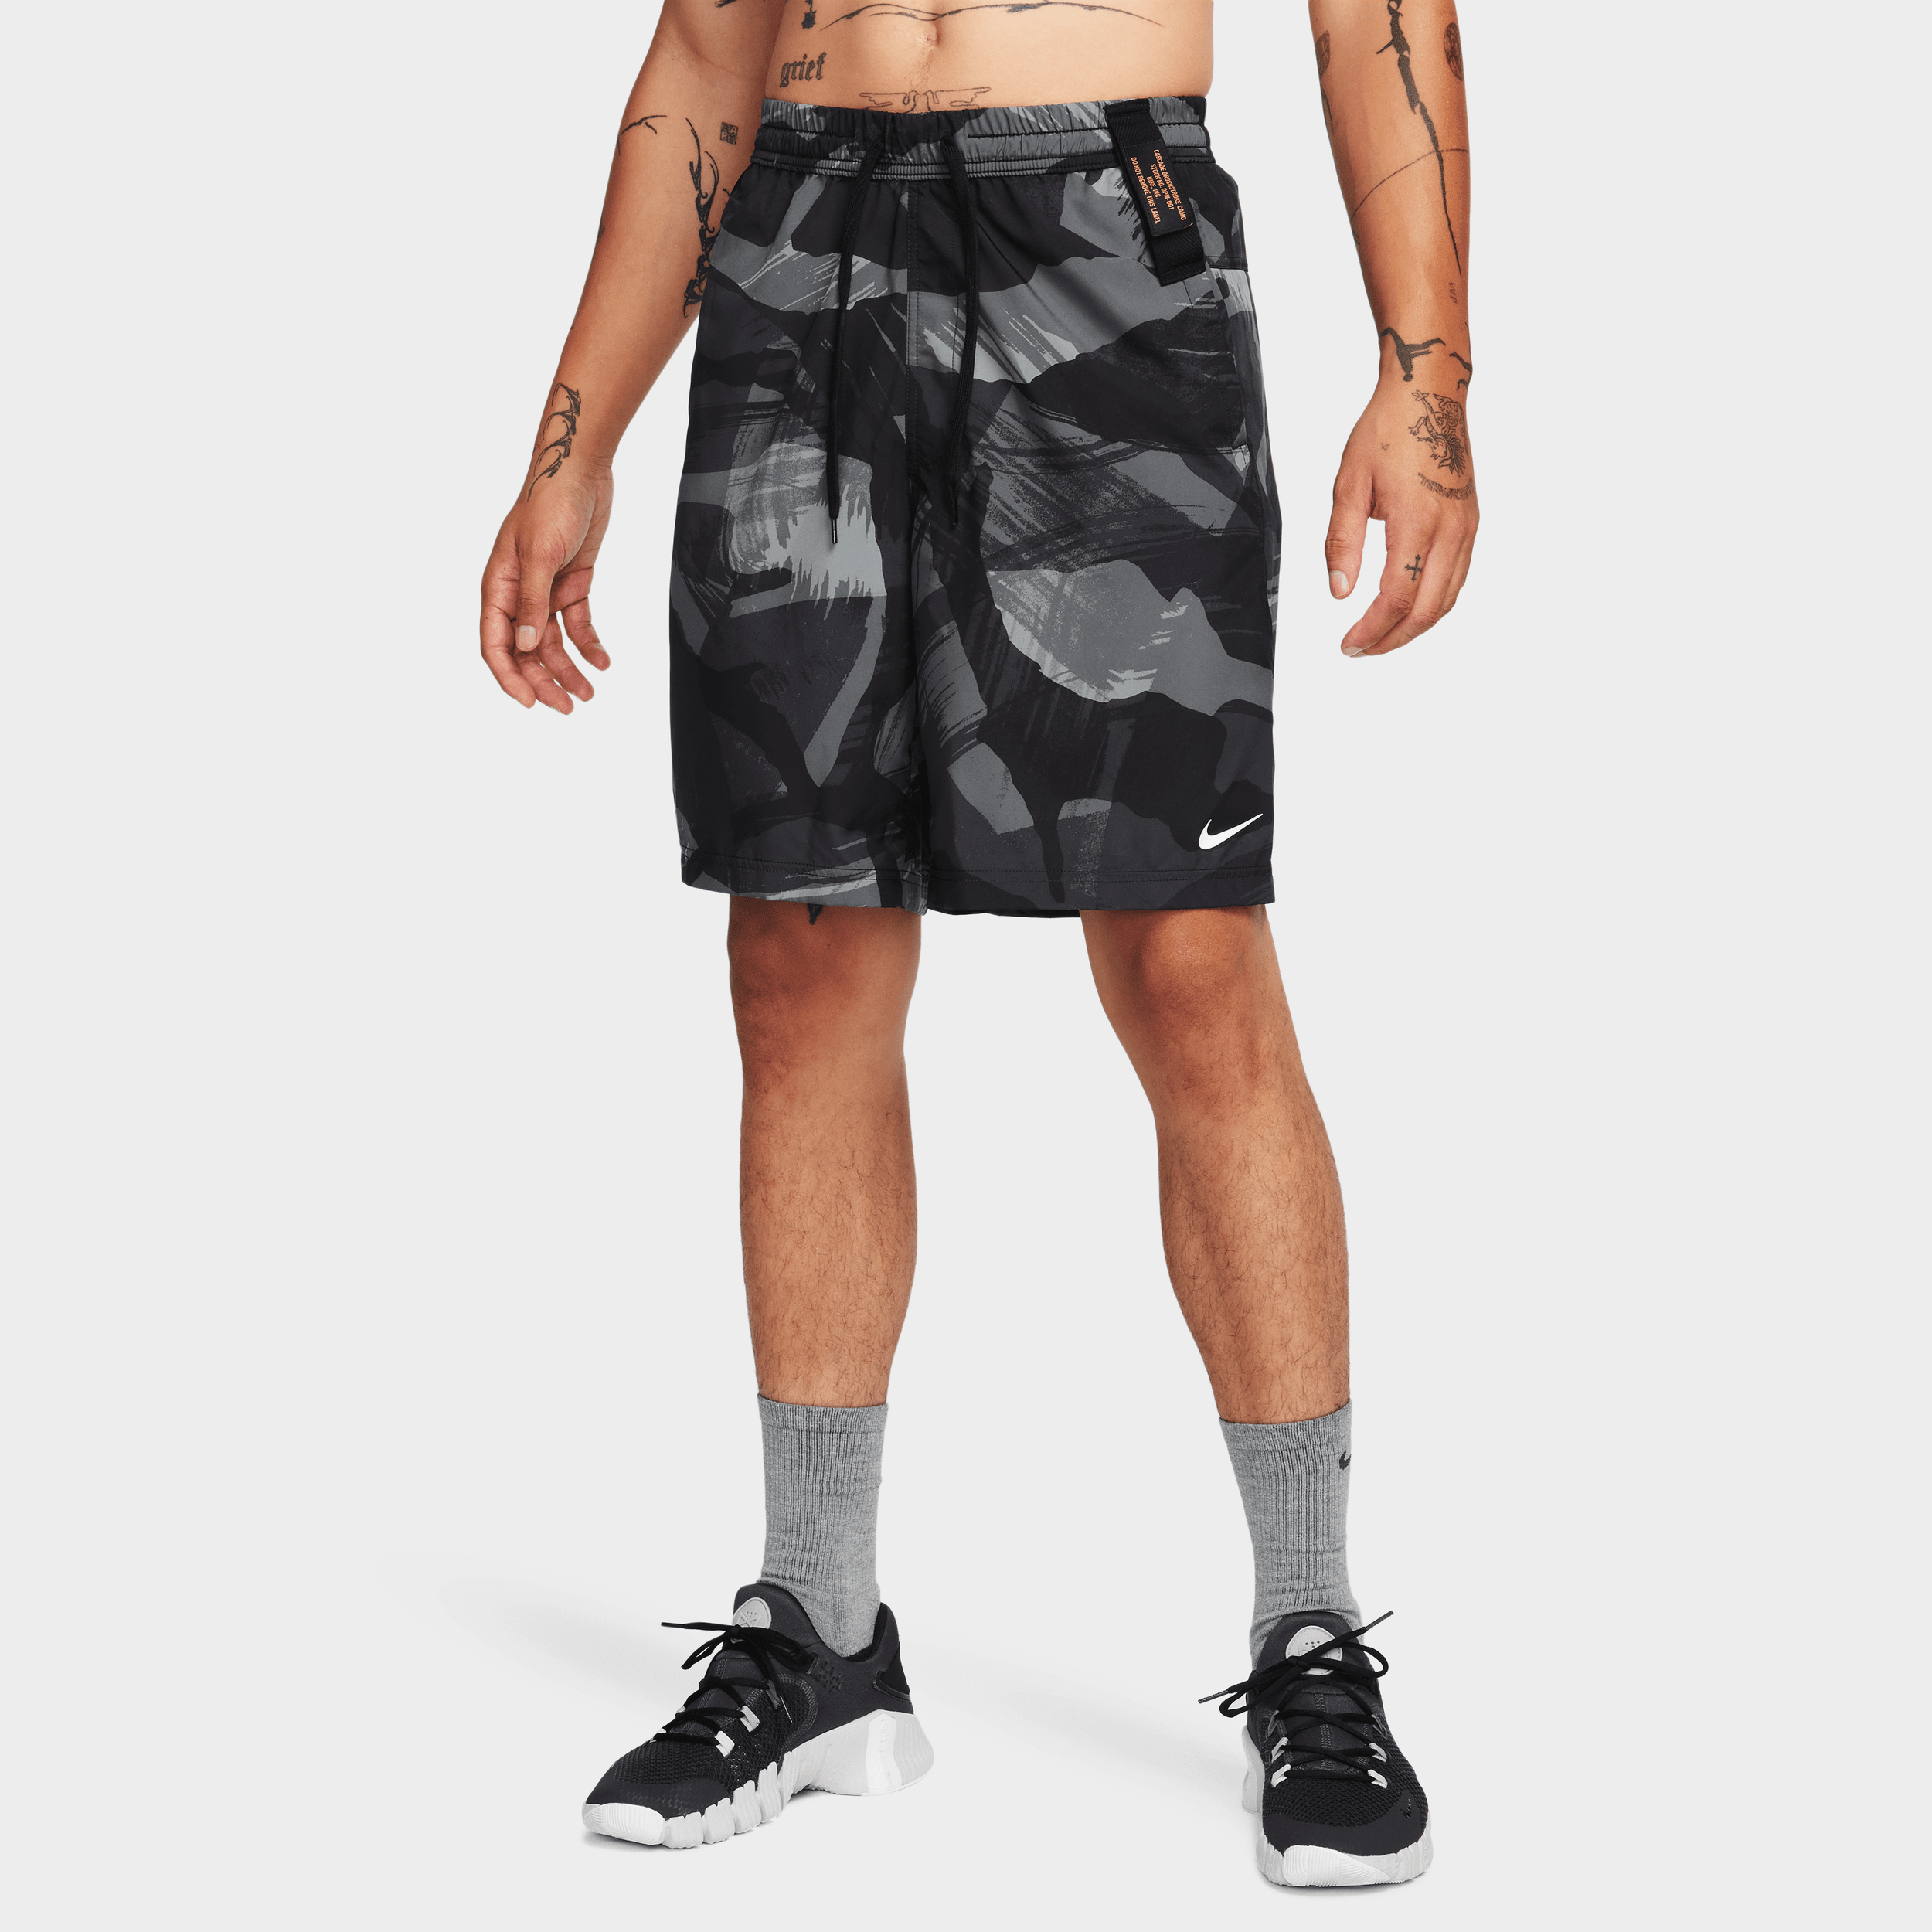 Alsidige Nike Form Dri-FIT-shorts (23 cm) uden for til mænd - sort